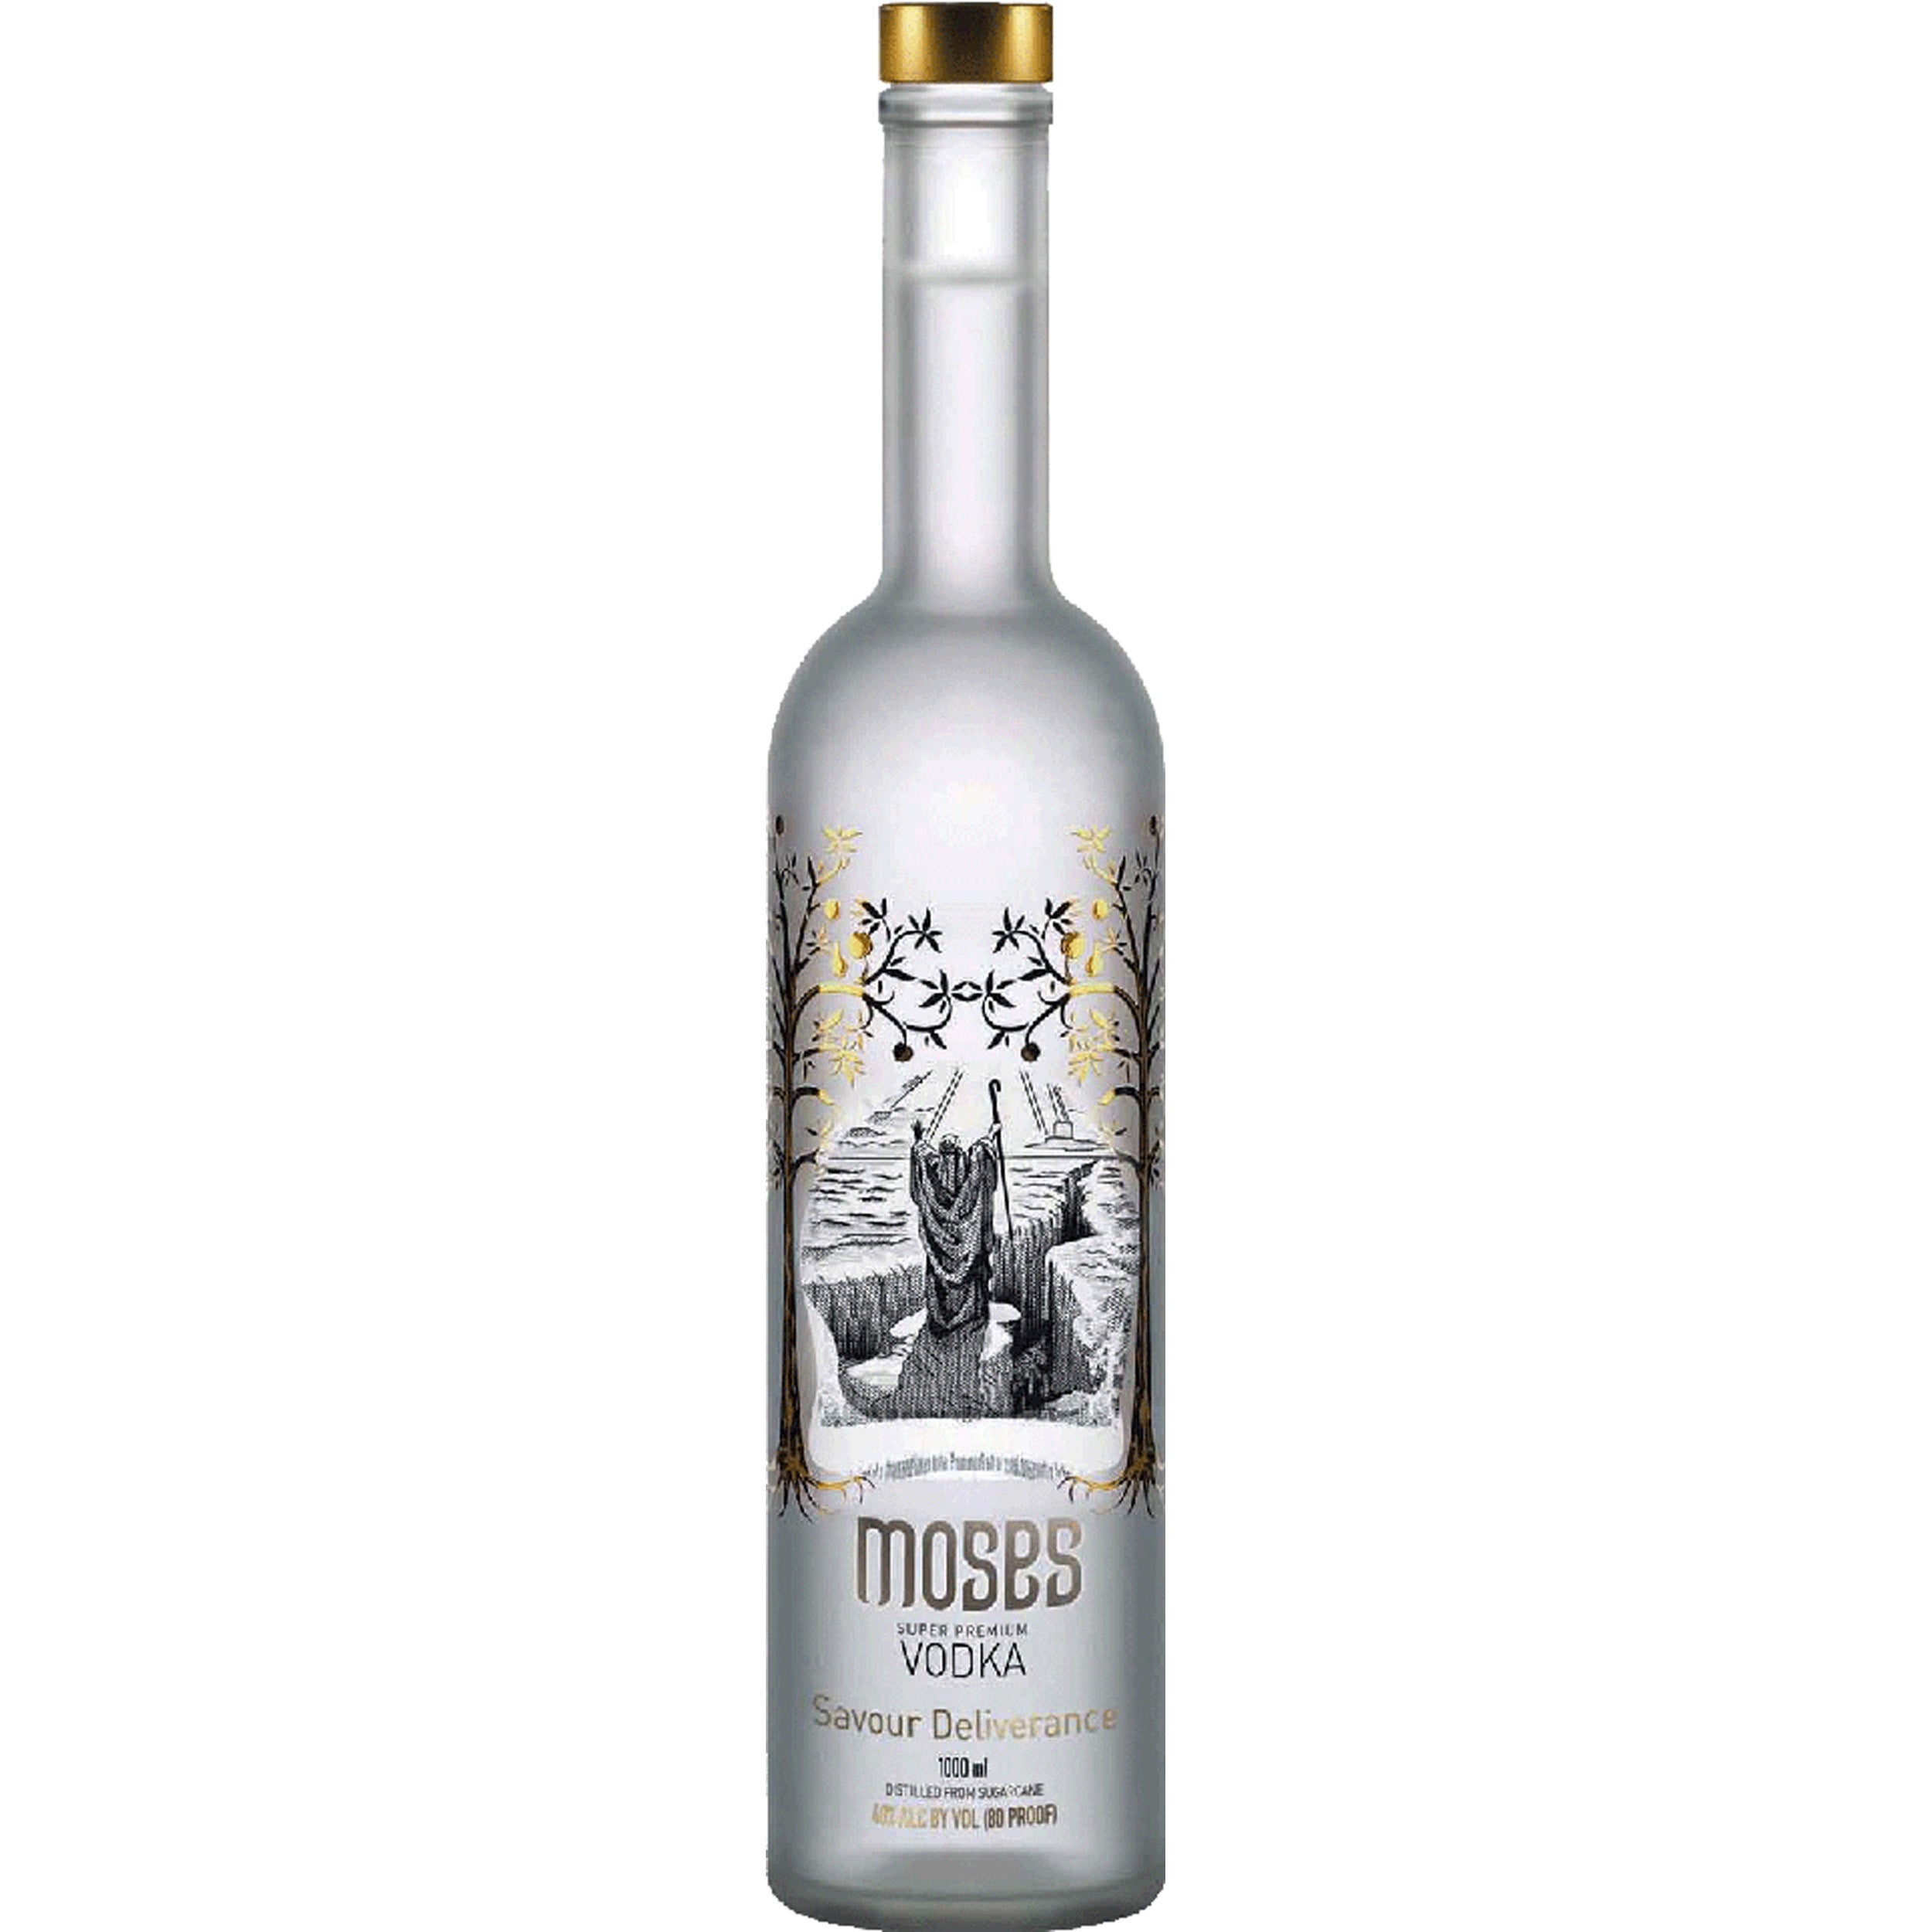 Moses Vodka